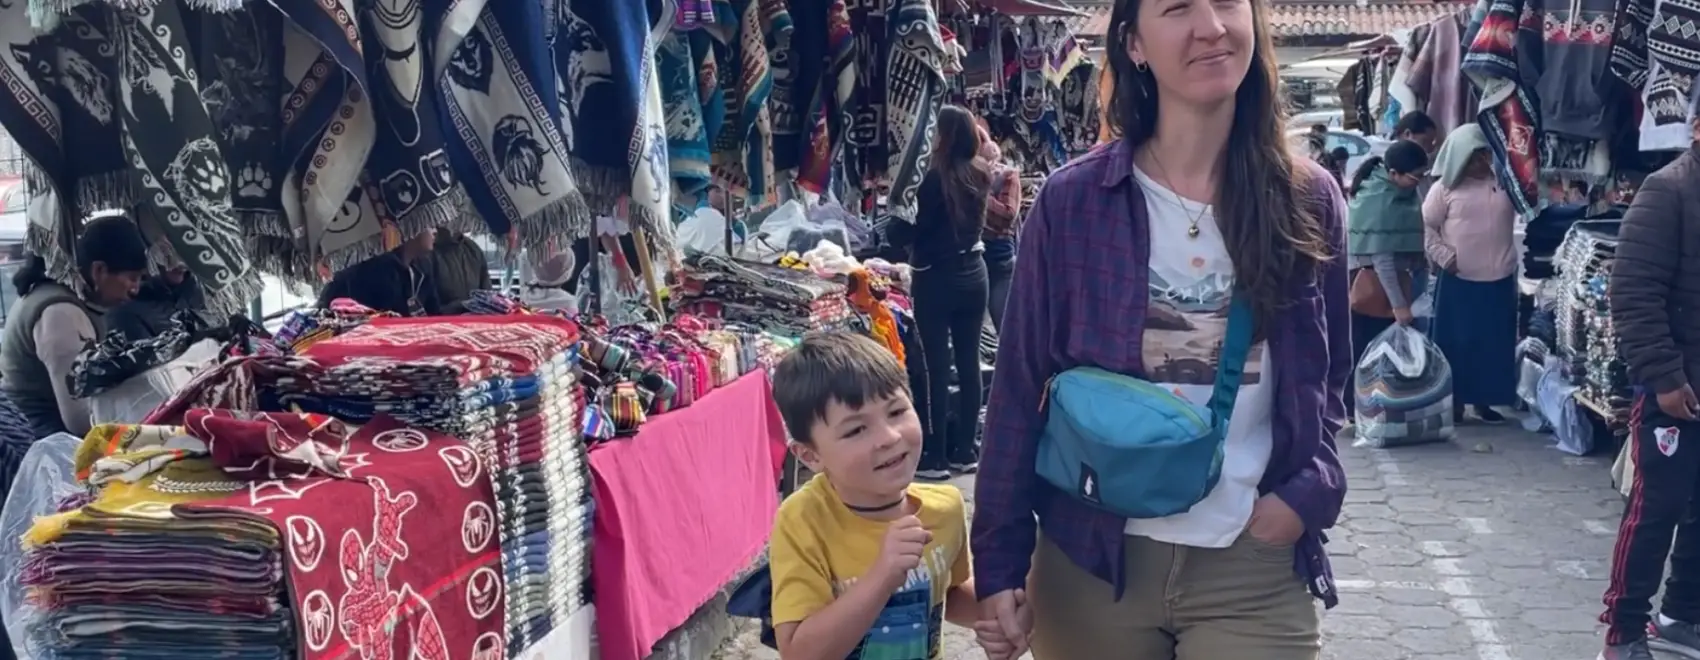 Visiting Cotacachi and Otavalo Market in Ecuador